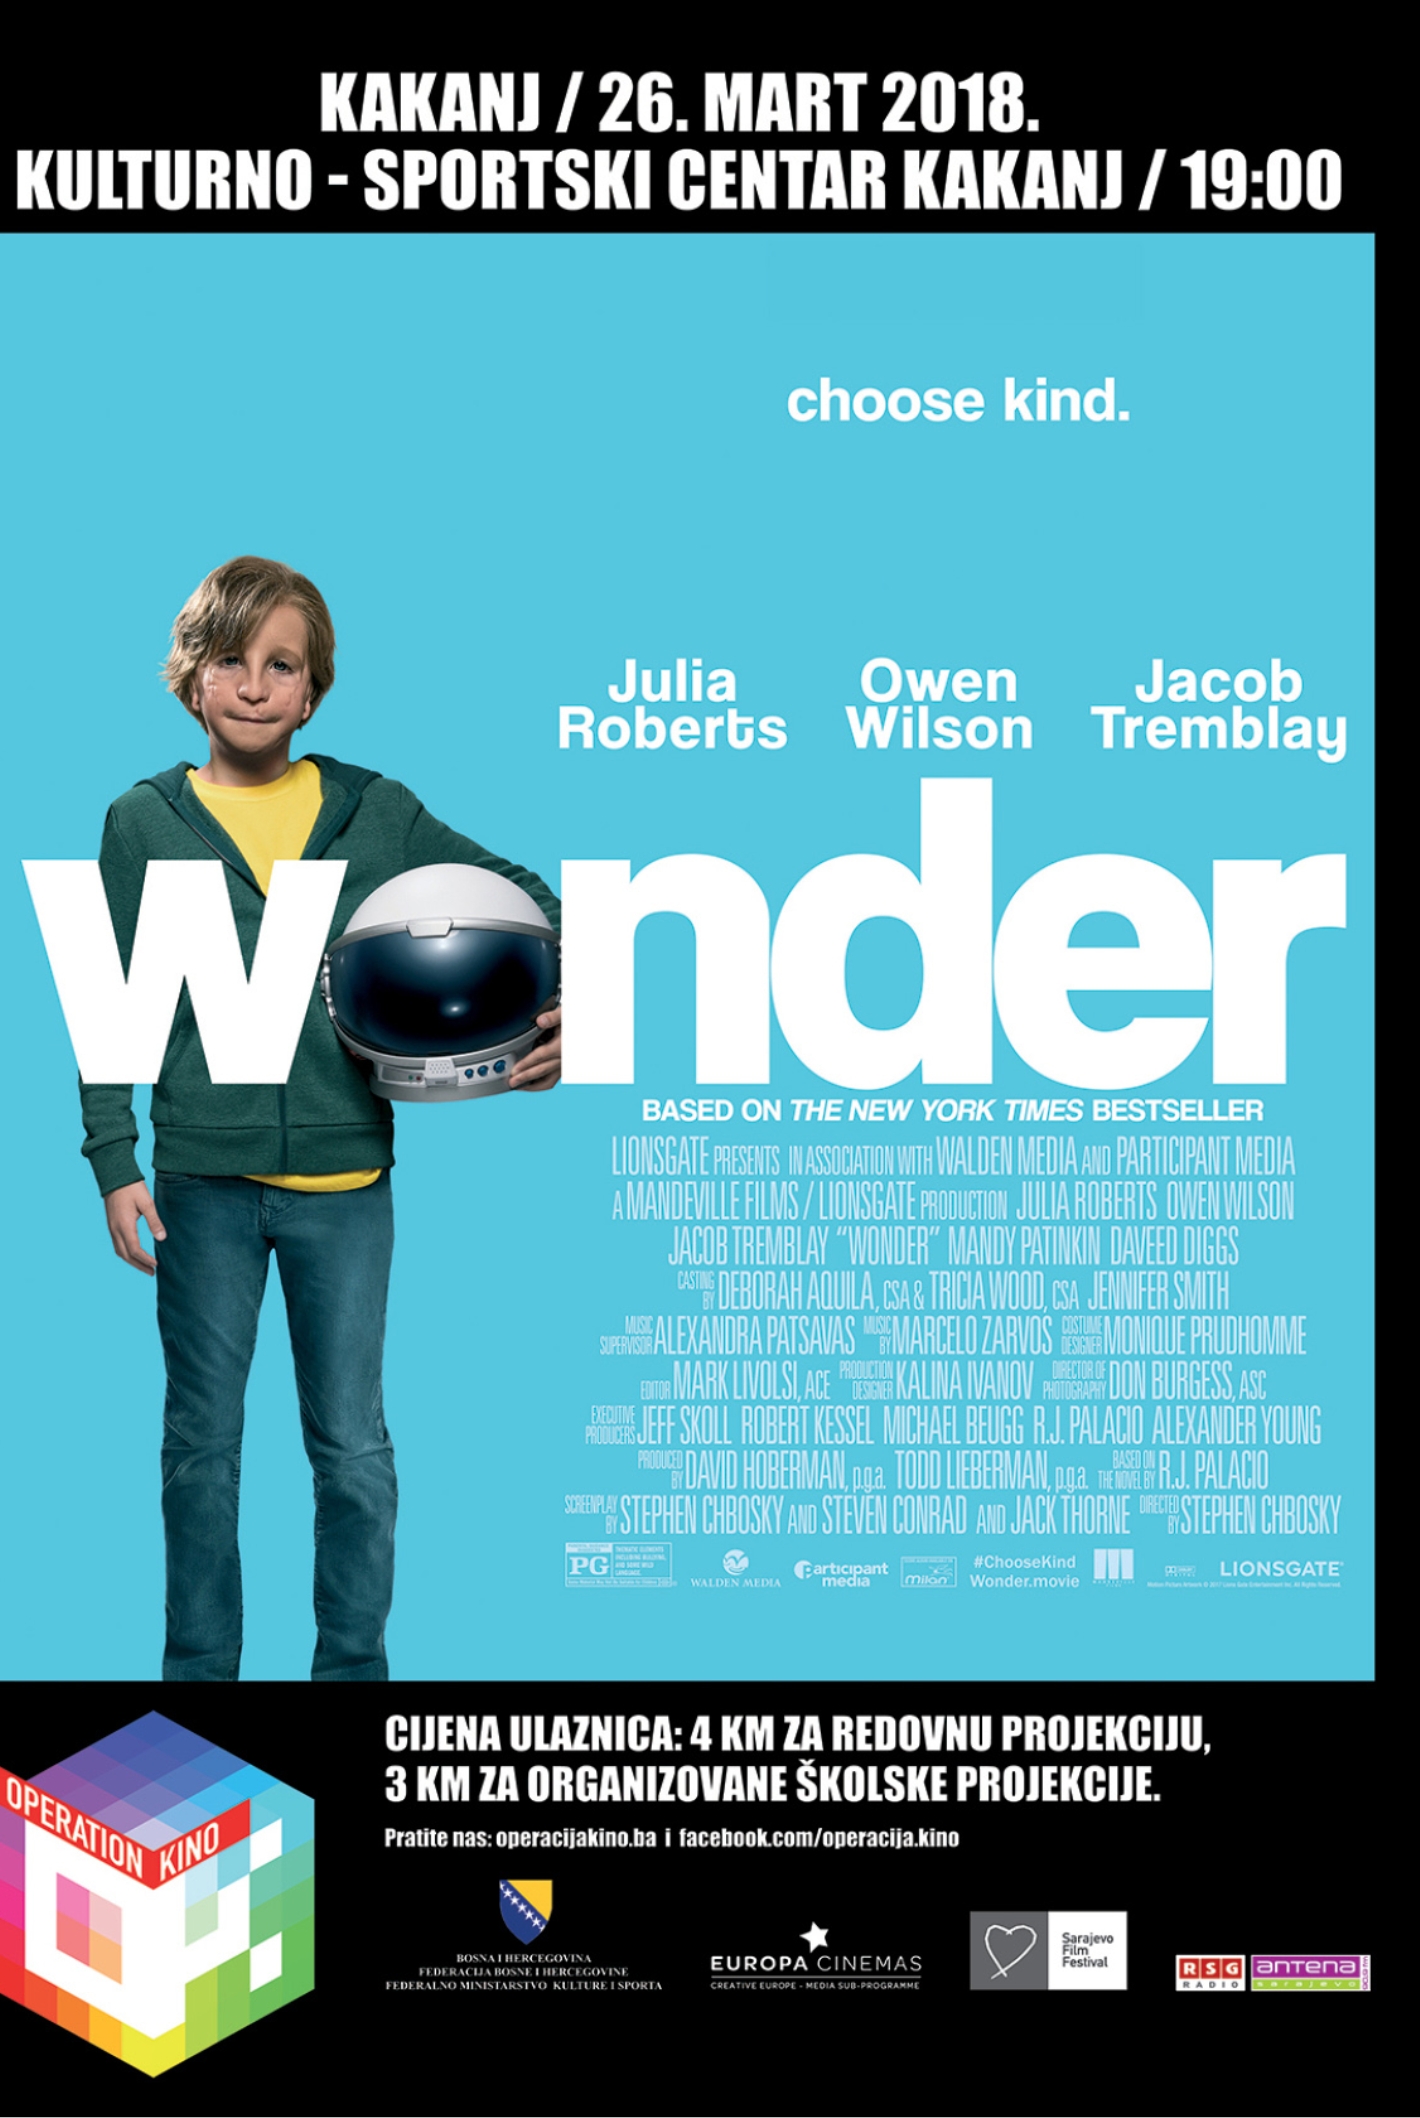 U komentar napišite s kim dolazite na projekciju filma “Wonder” i osvojite ulaznice – NAGRADNA IGRA